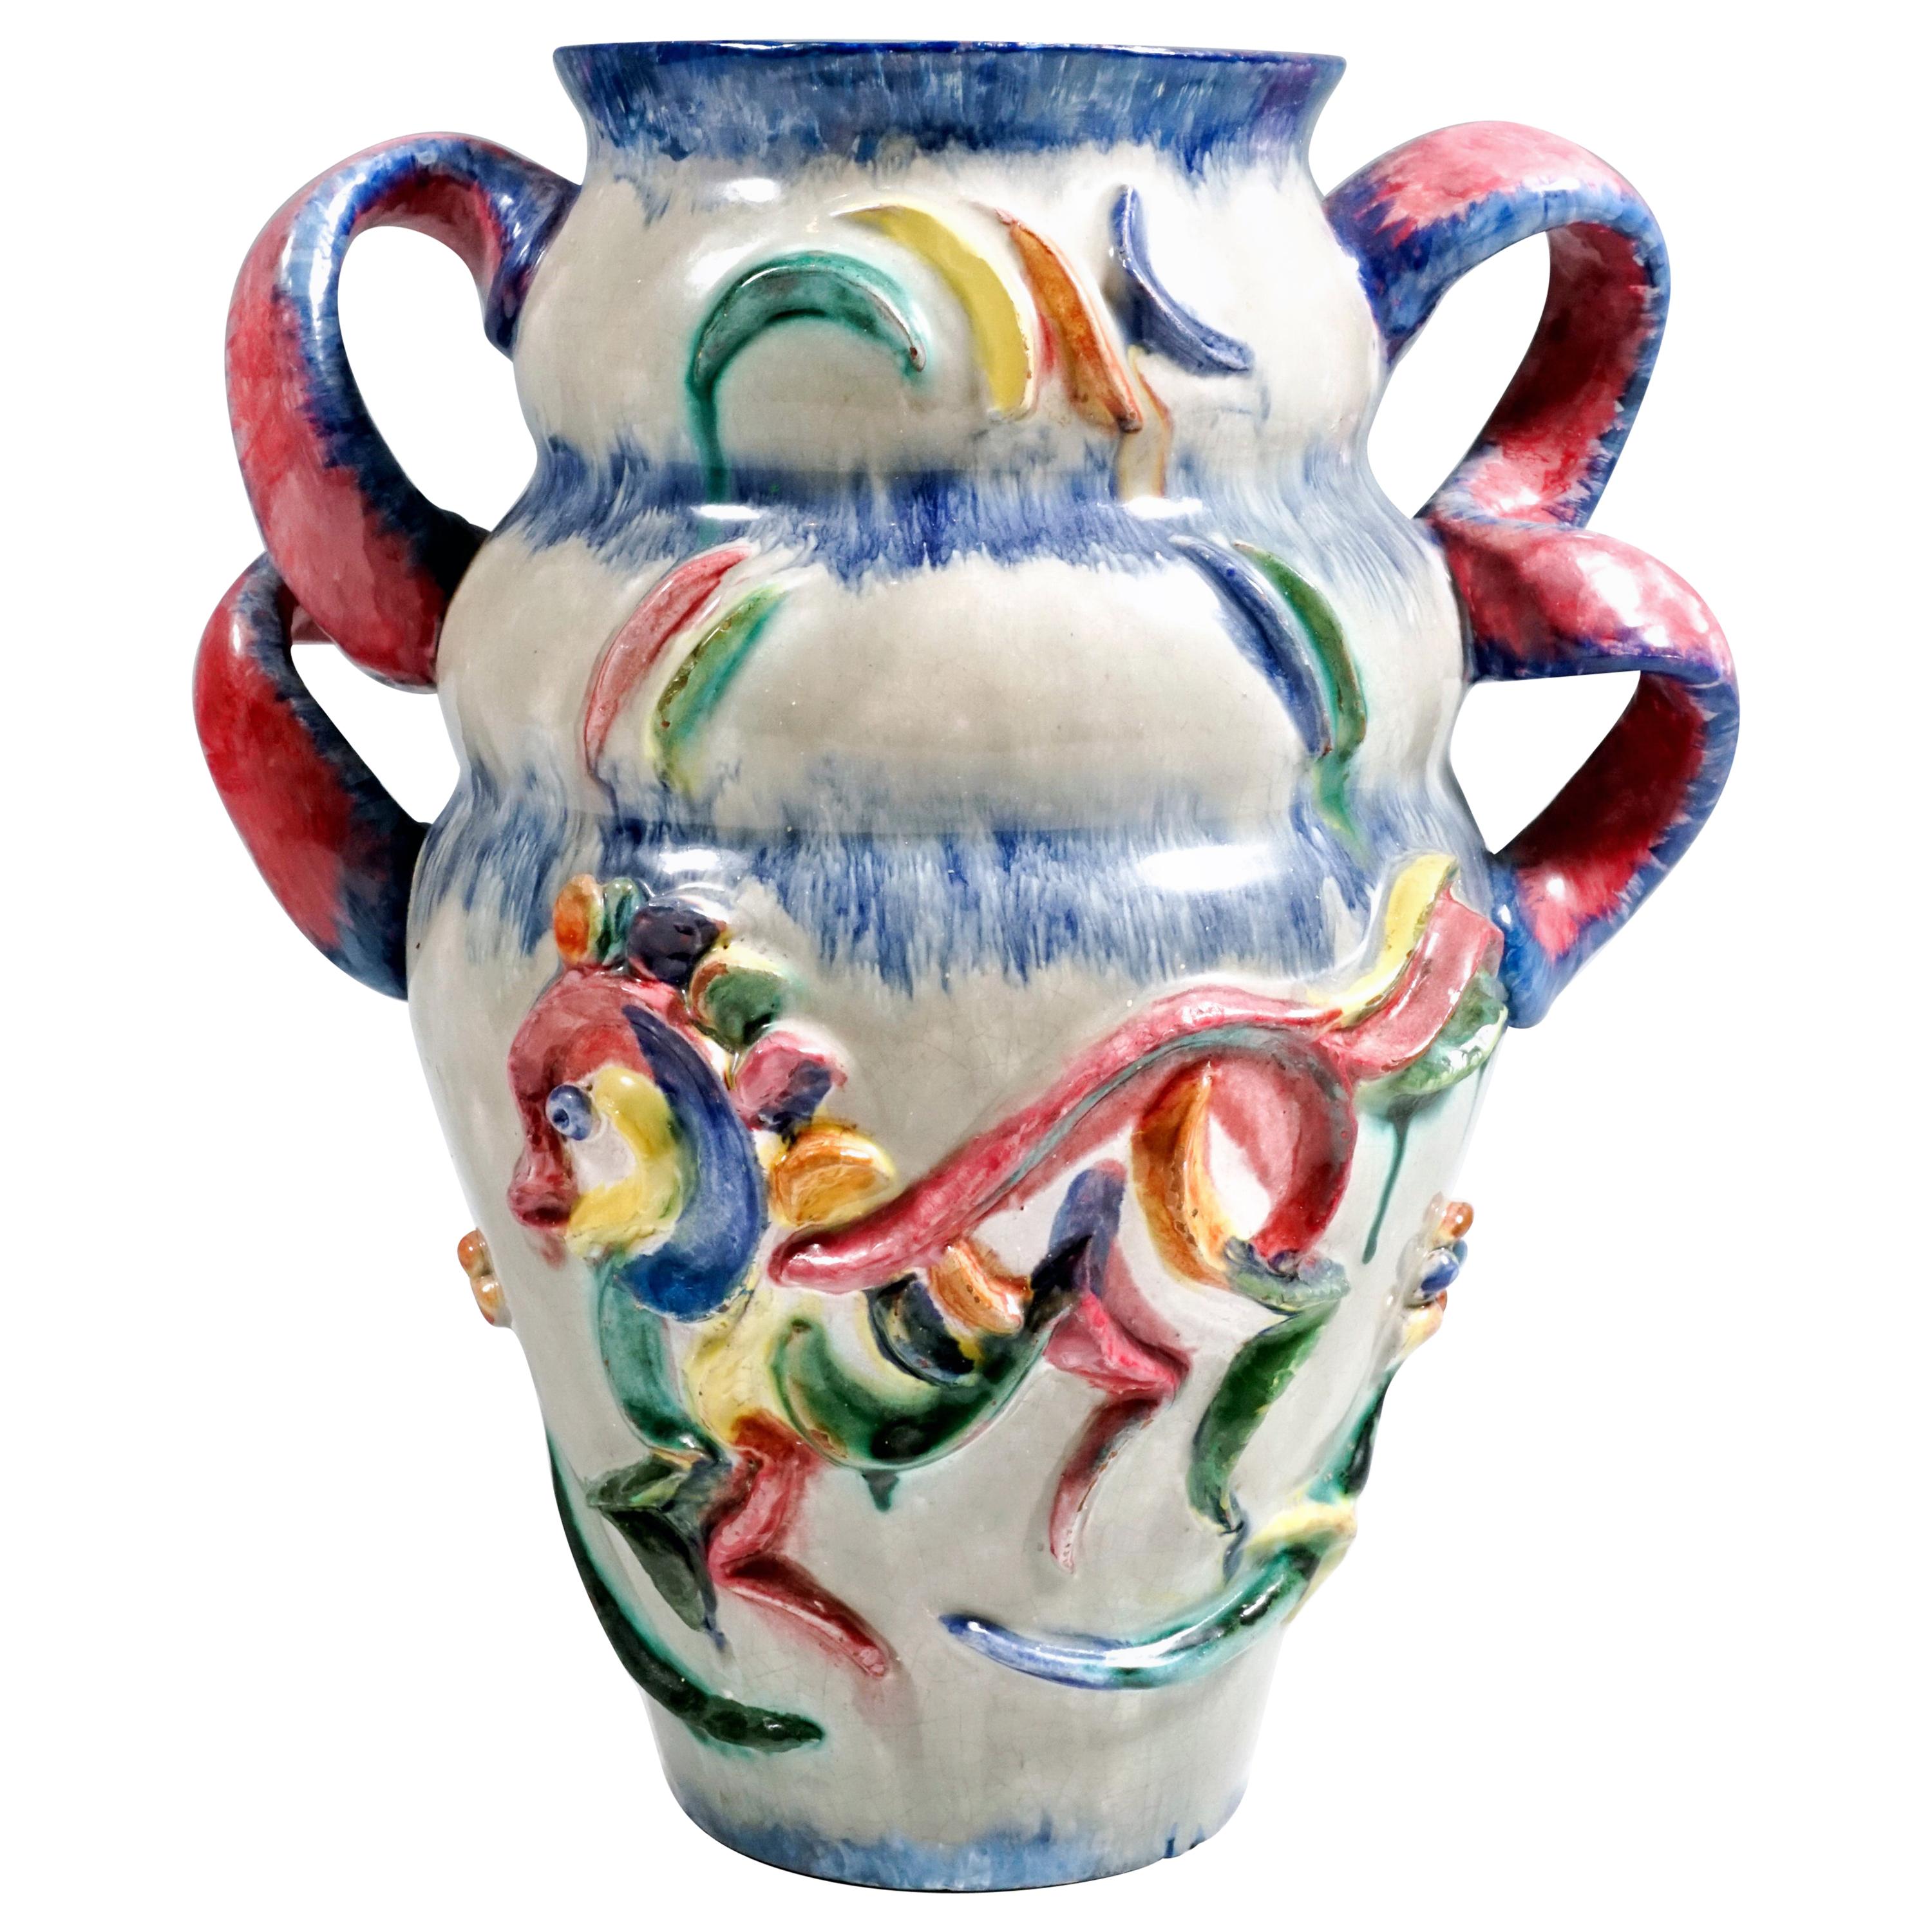 Wiener Werkstätte Art Ceramics Expressive Style Vase by Vally Wieselthier, 1922